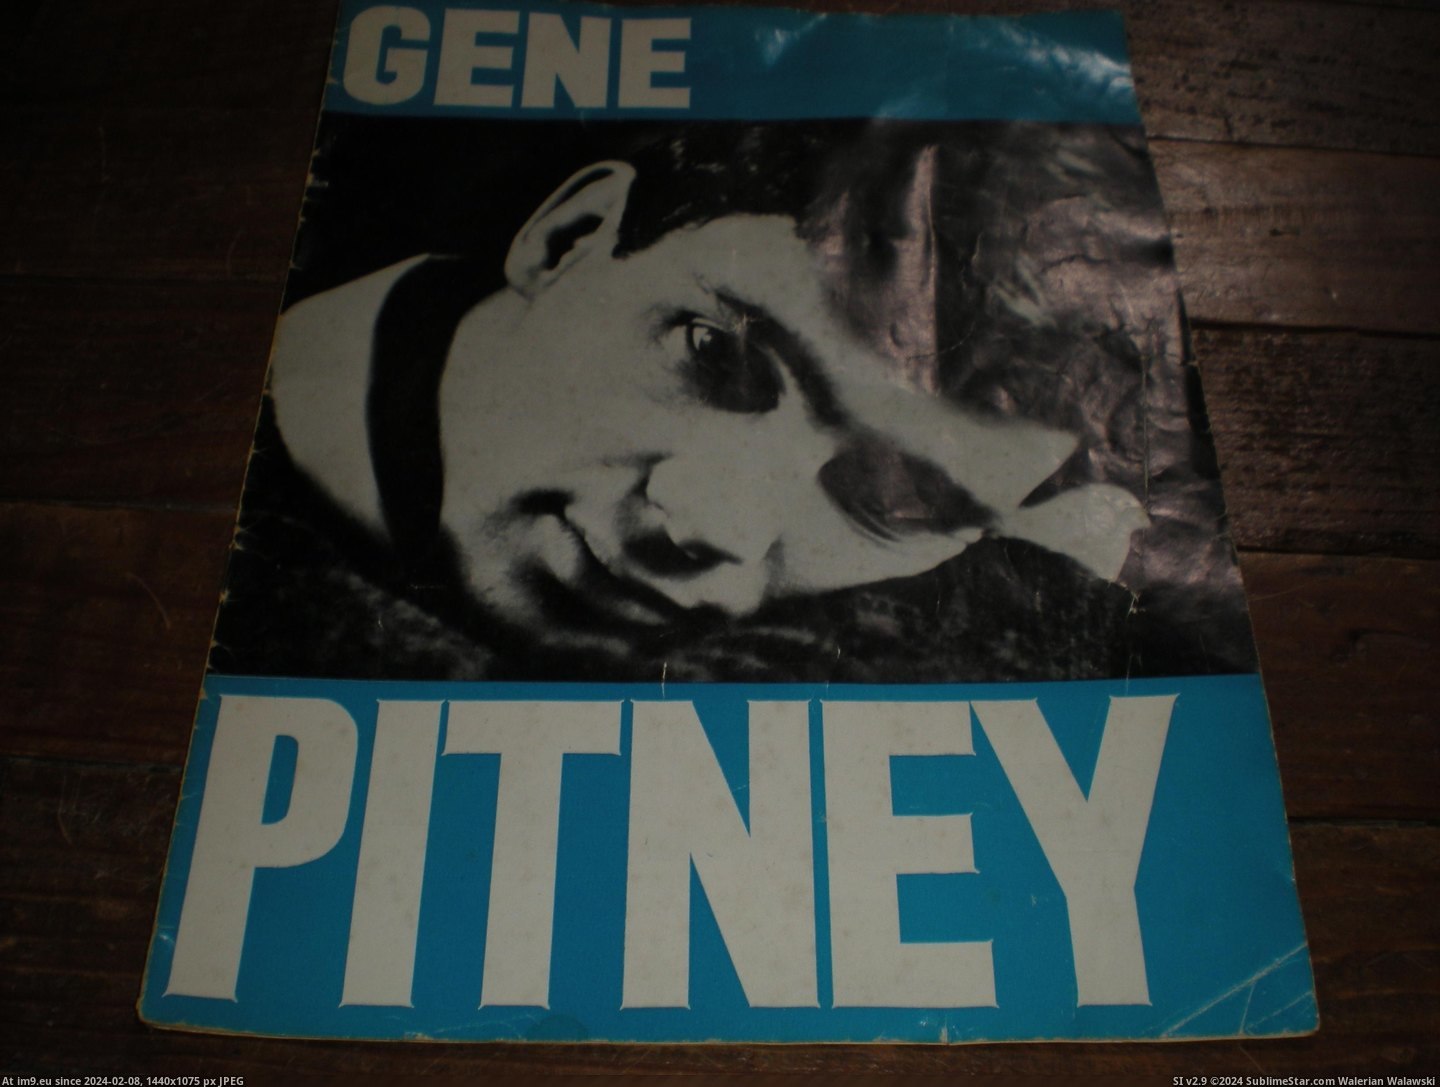 #Gene #Pitney #Prog Gene Pitney prog 1 Pic. (Obraz z album new 1))